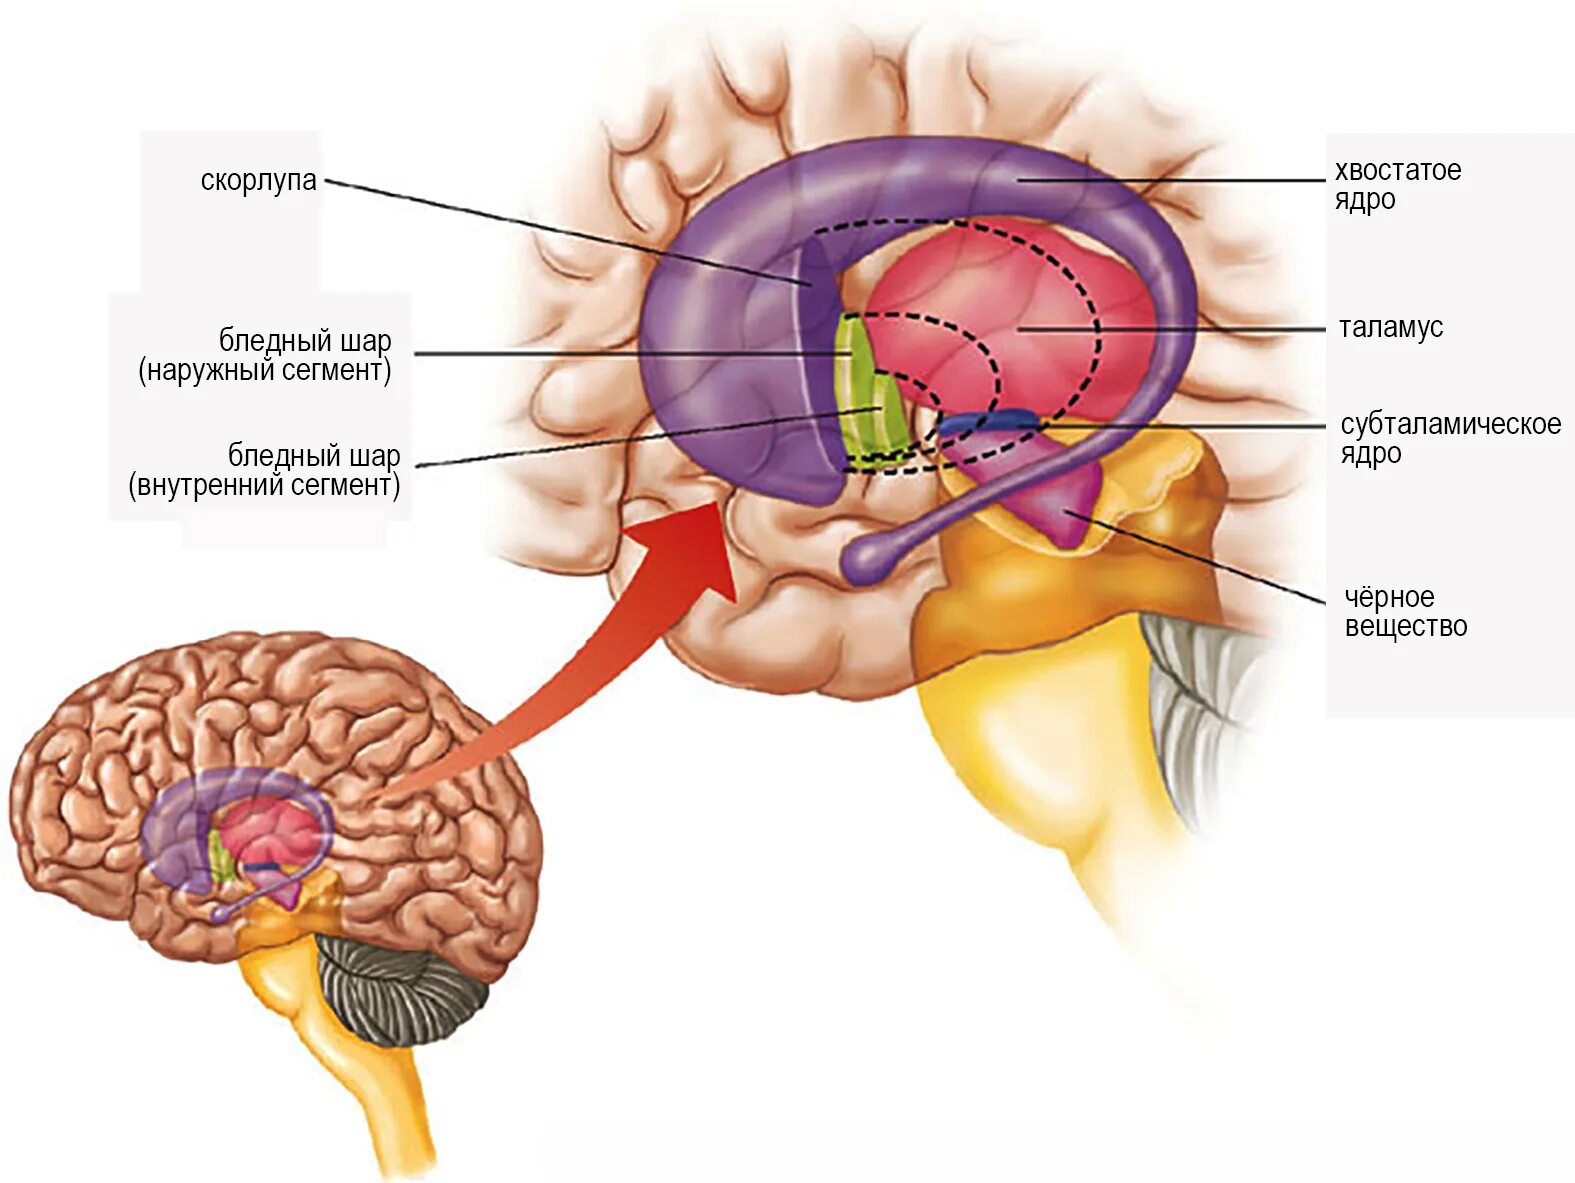 Хвостатое ядро мозга. Бледный шар скорлупа хвостатое ядро. Путамен (базальные ганглии). Таламус анатомия. Putamen анатомия.